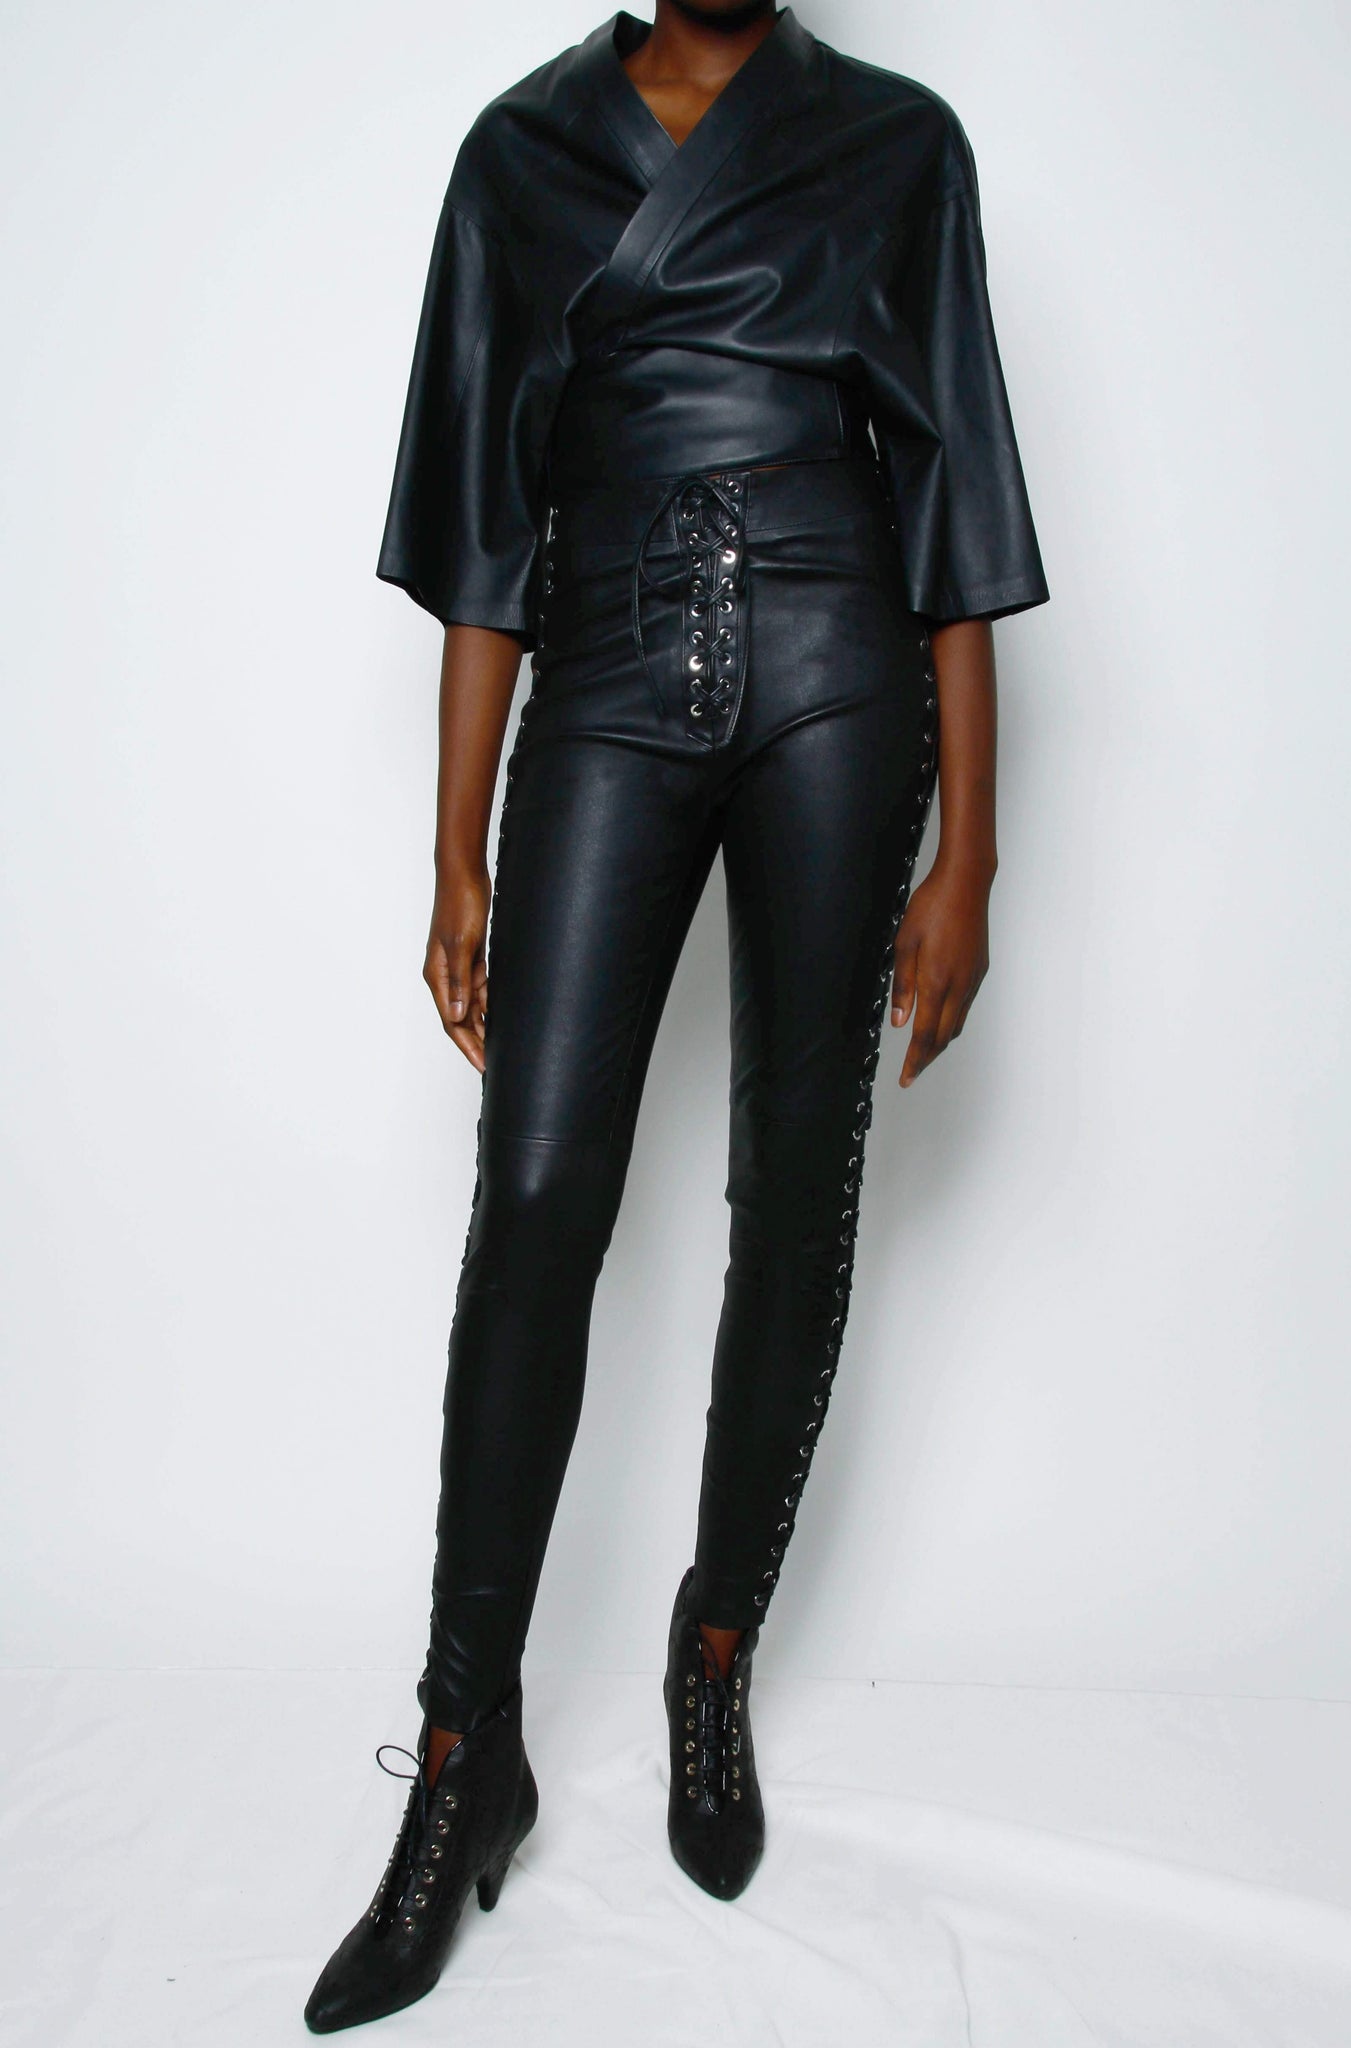 Lace Up Vegan Leather Pant  Black  Fashion Nova Luxe  Fashion Nova